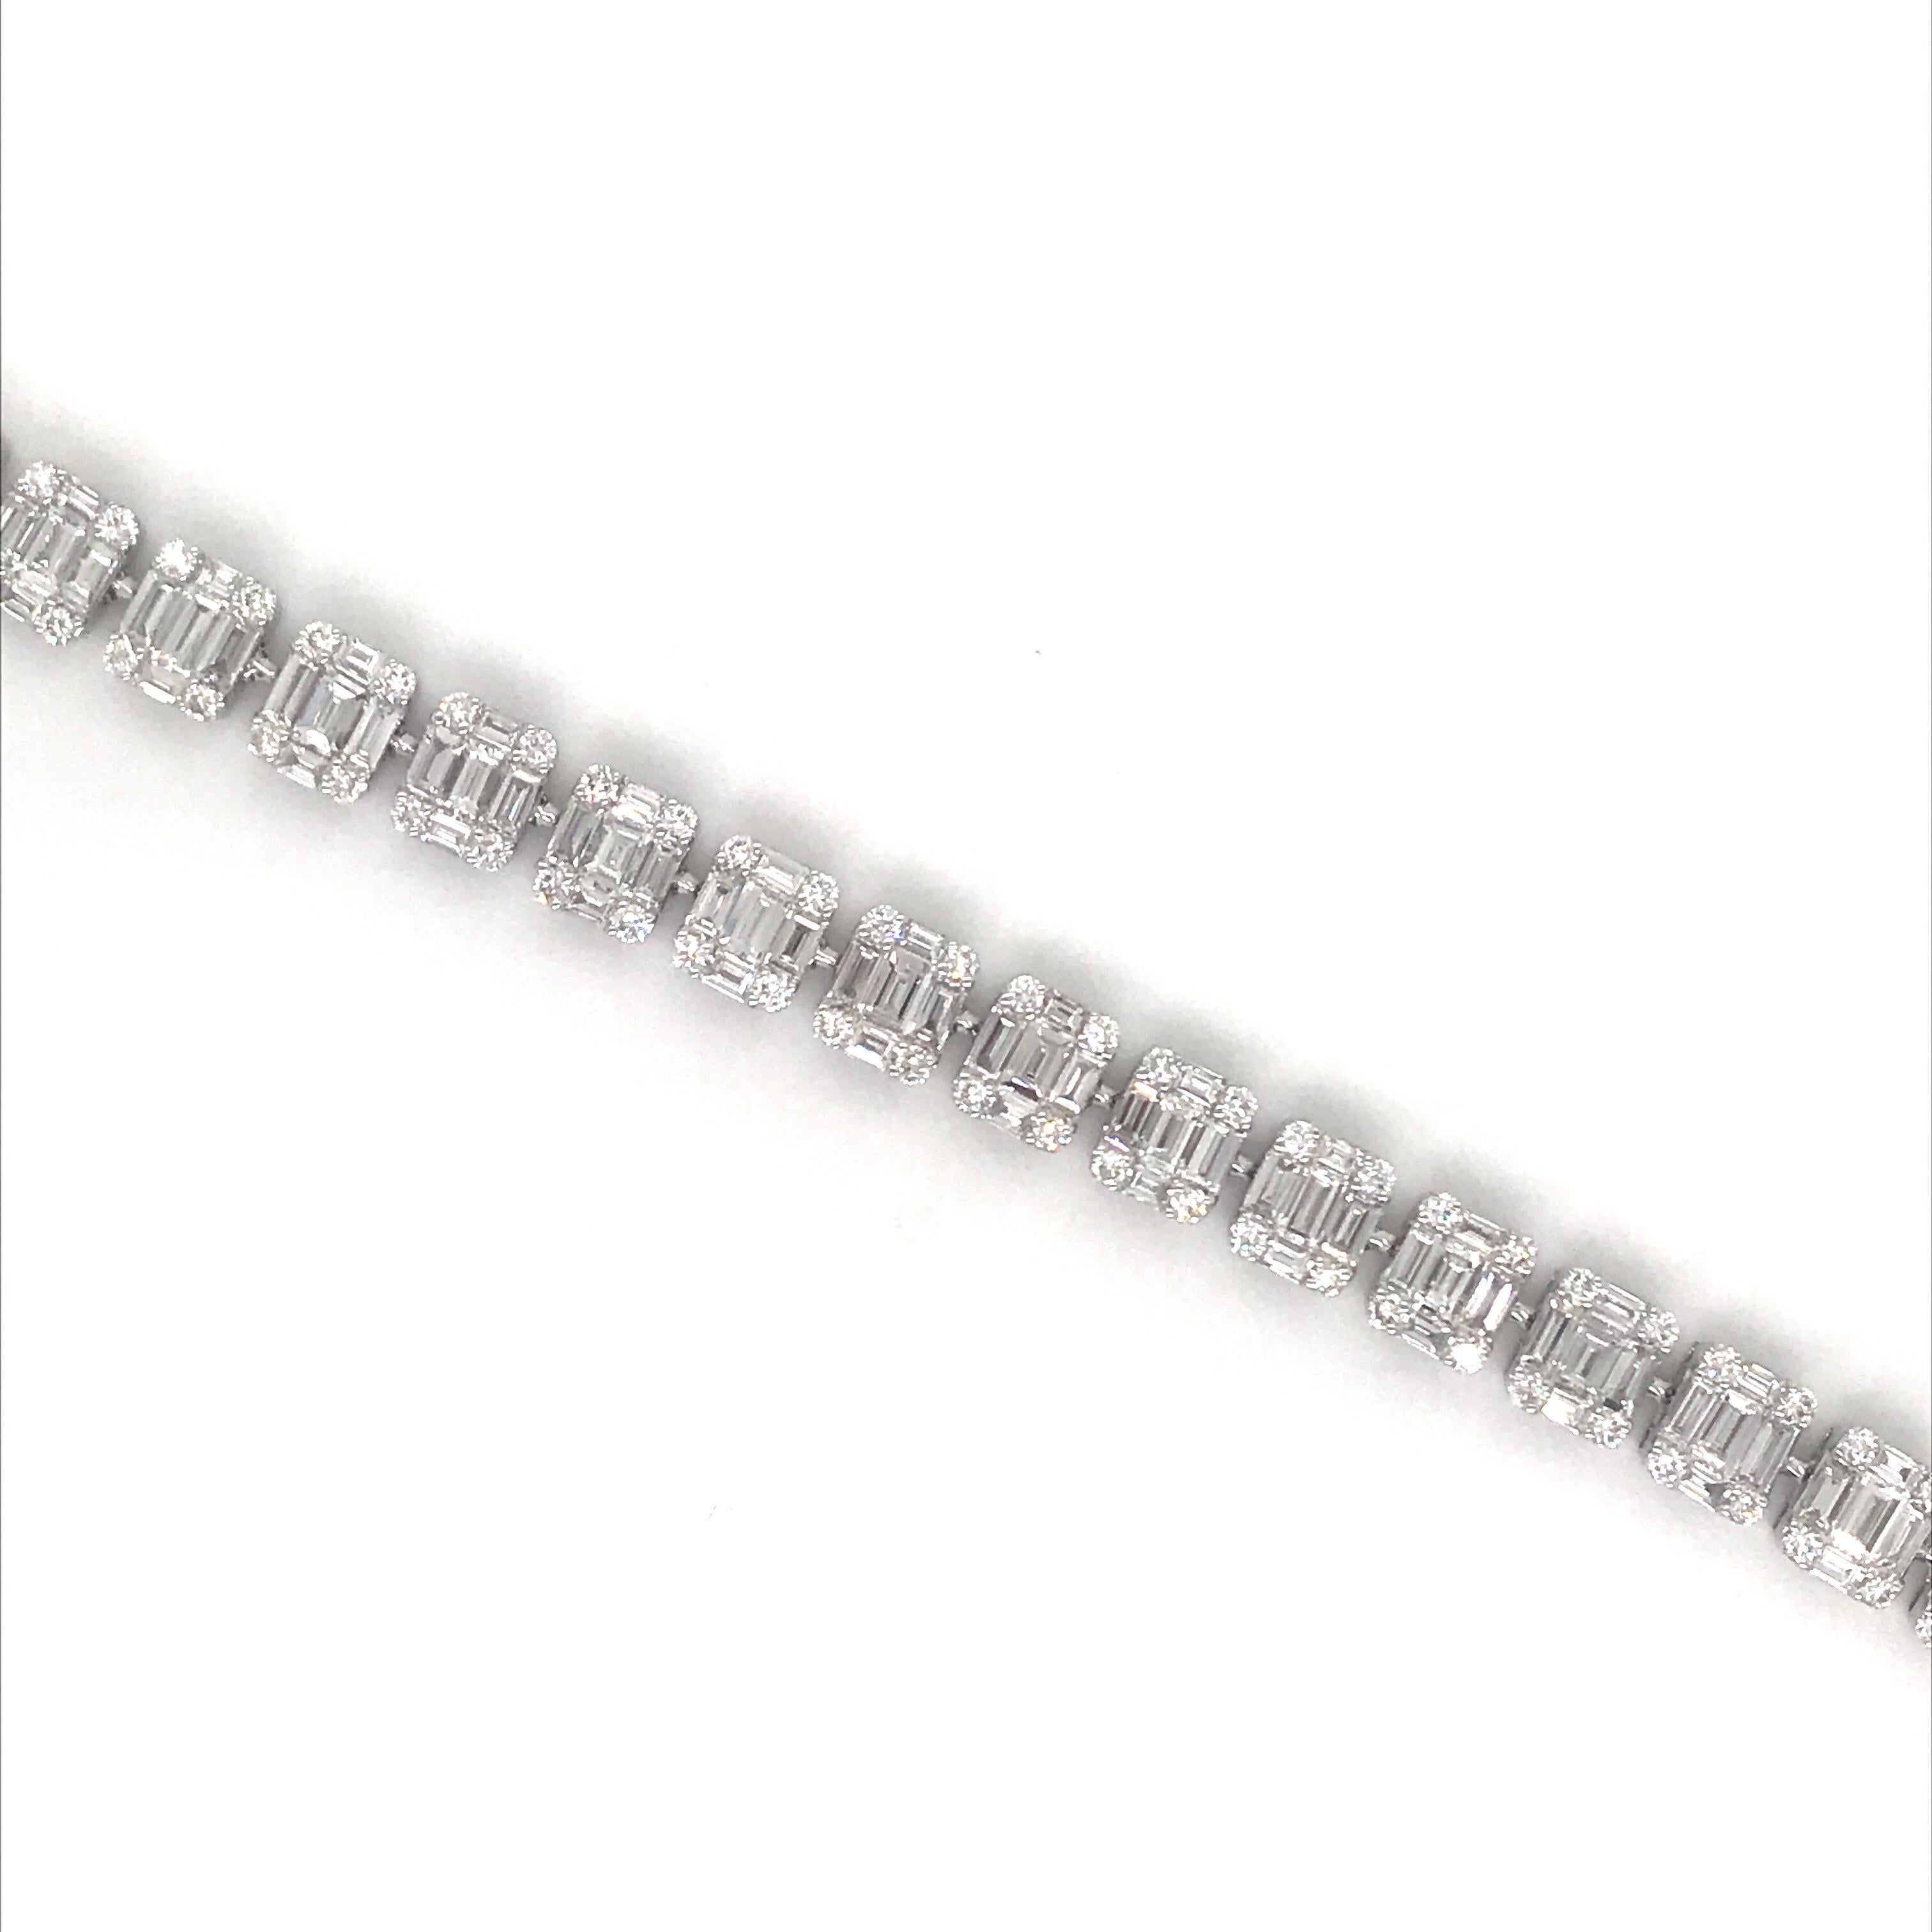 illusions-Tennisarmband aus 18 K Weißgold mit 135 Baguette-Diamanten von 6,09 Karat, umgeben von 108 runden Brillanten von 1,57 Karat.
Farbe G-H
Klarheit SI